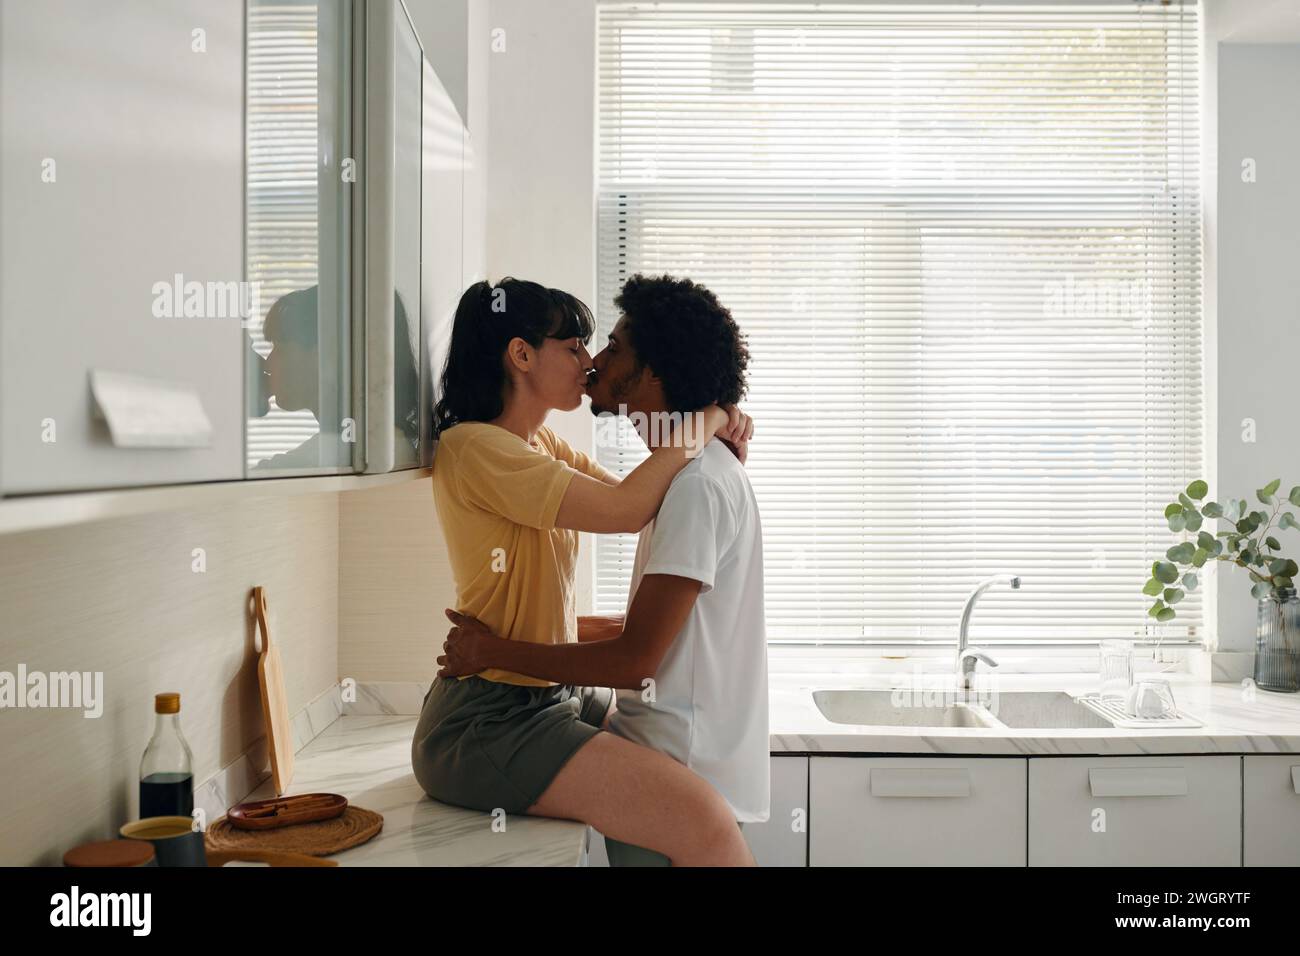 Junge, liebevolle Frau in Casualwear, die auf der Küchentheke sitzt und ihren Mann küsst und die Hände um ihre Taille hält Stockfoto